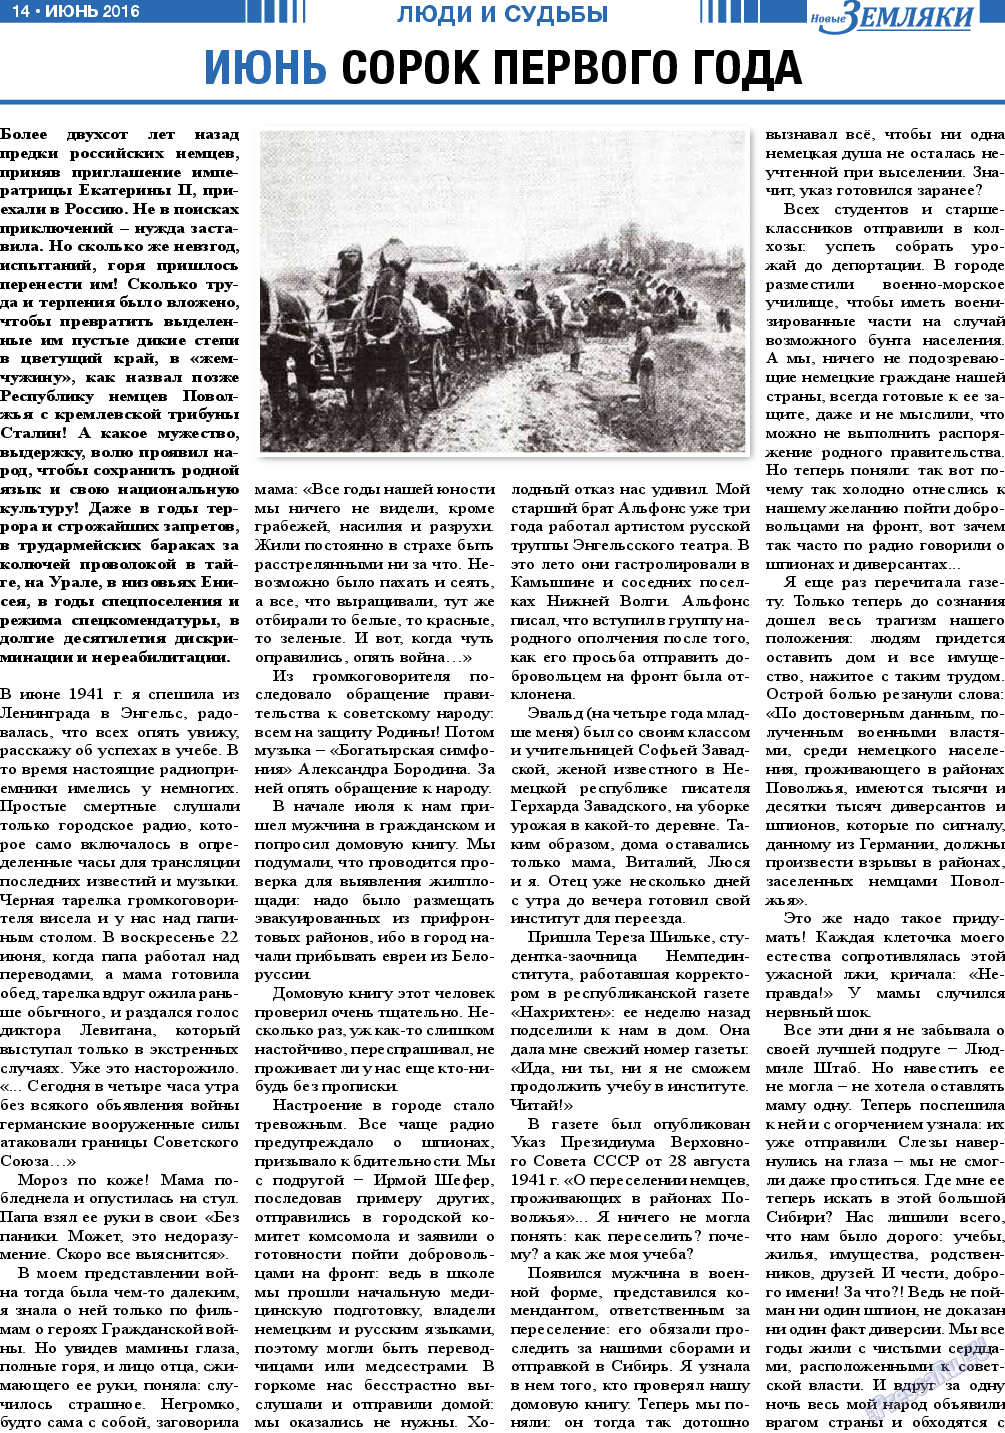 Новые Земляки, газета. 2016 №6 стр.14